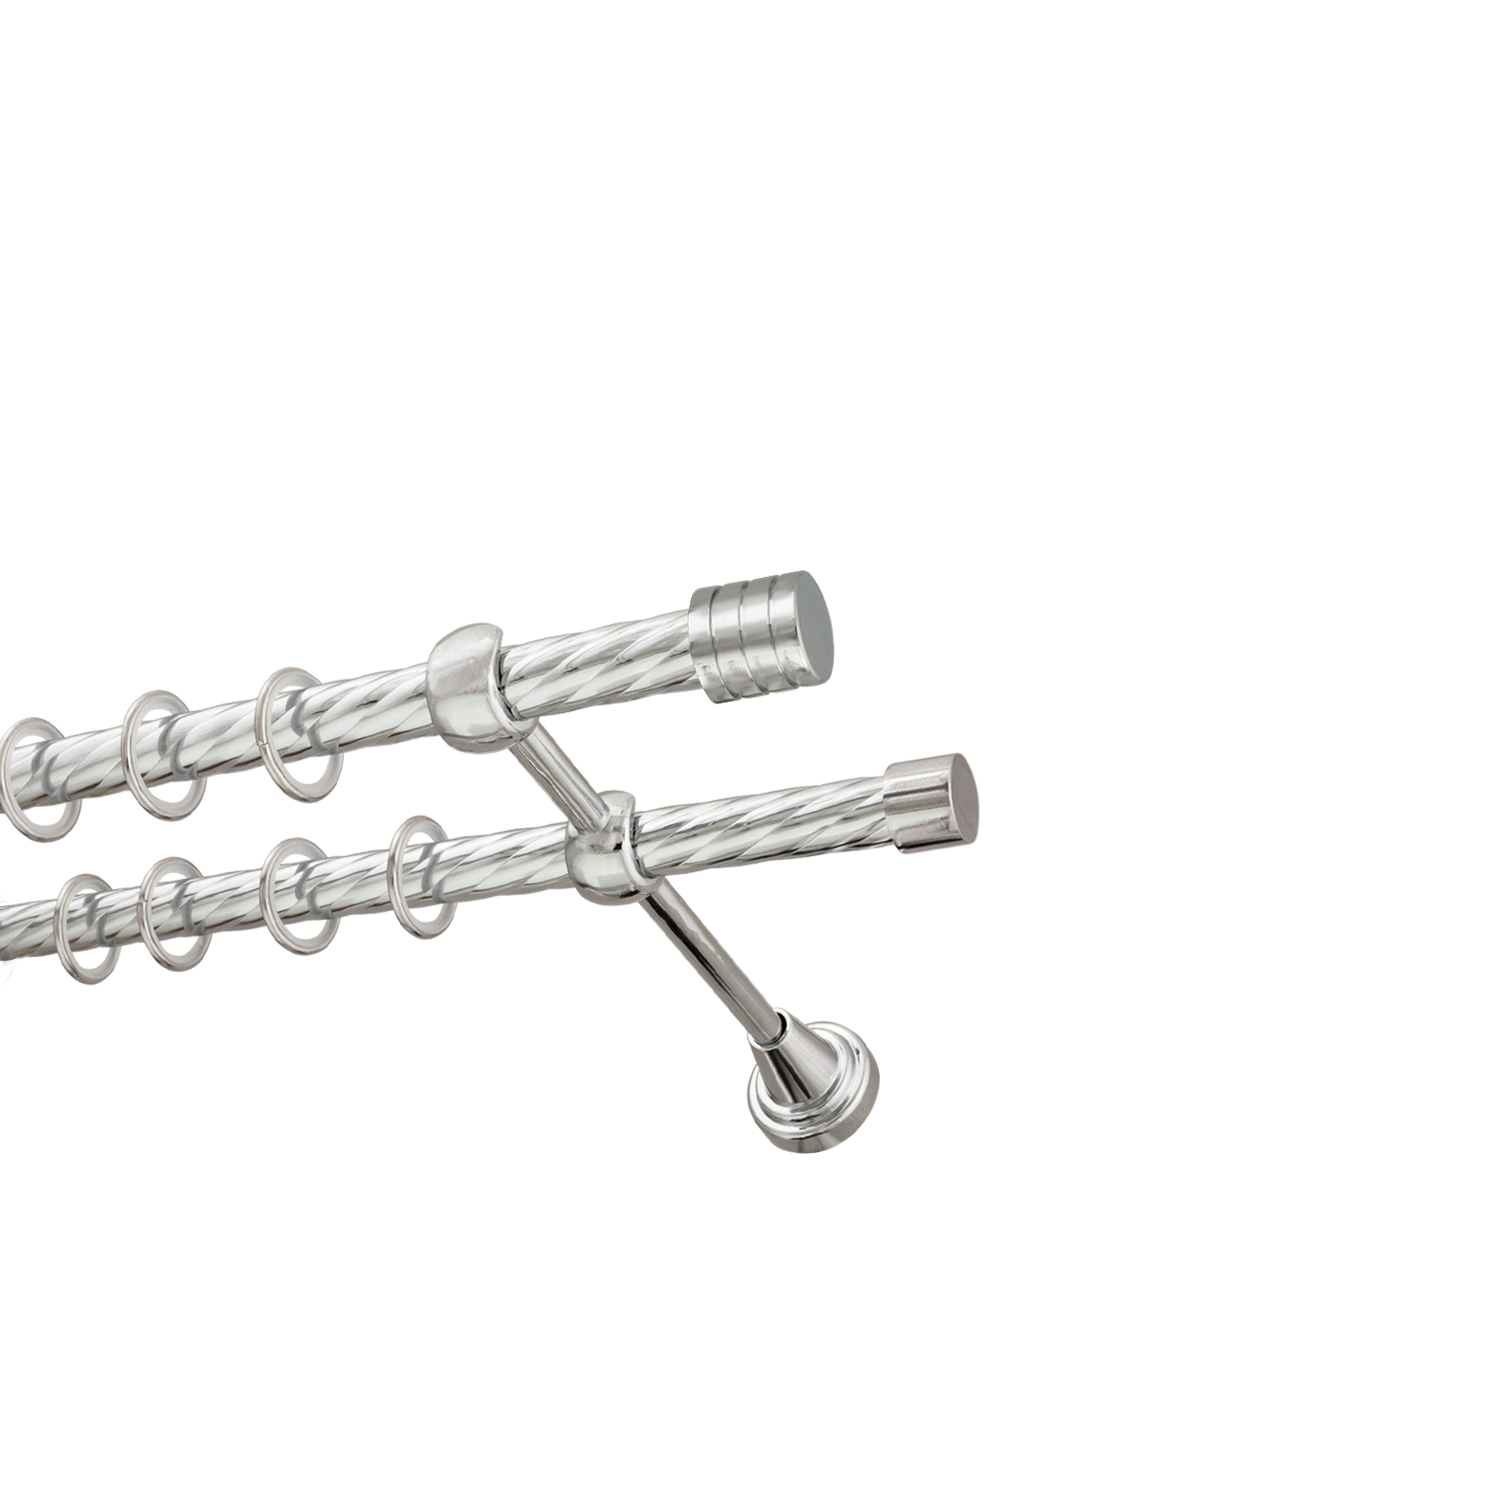 Металлический карниз для штор Подиум, двухрядный 16/16 мм, серебро, витая штанга, длина 160 см